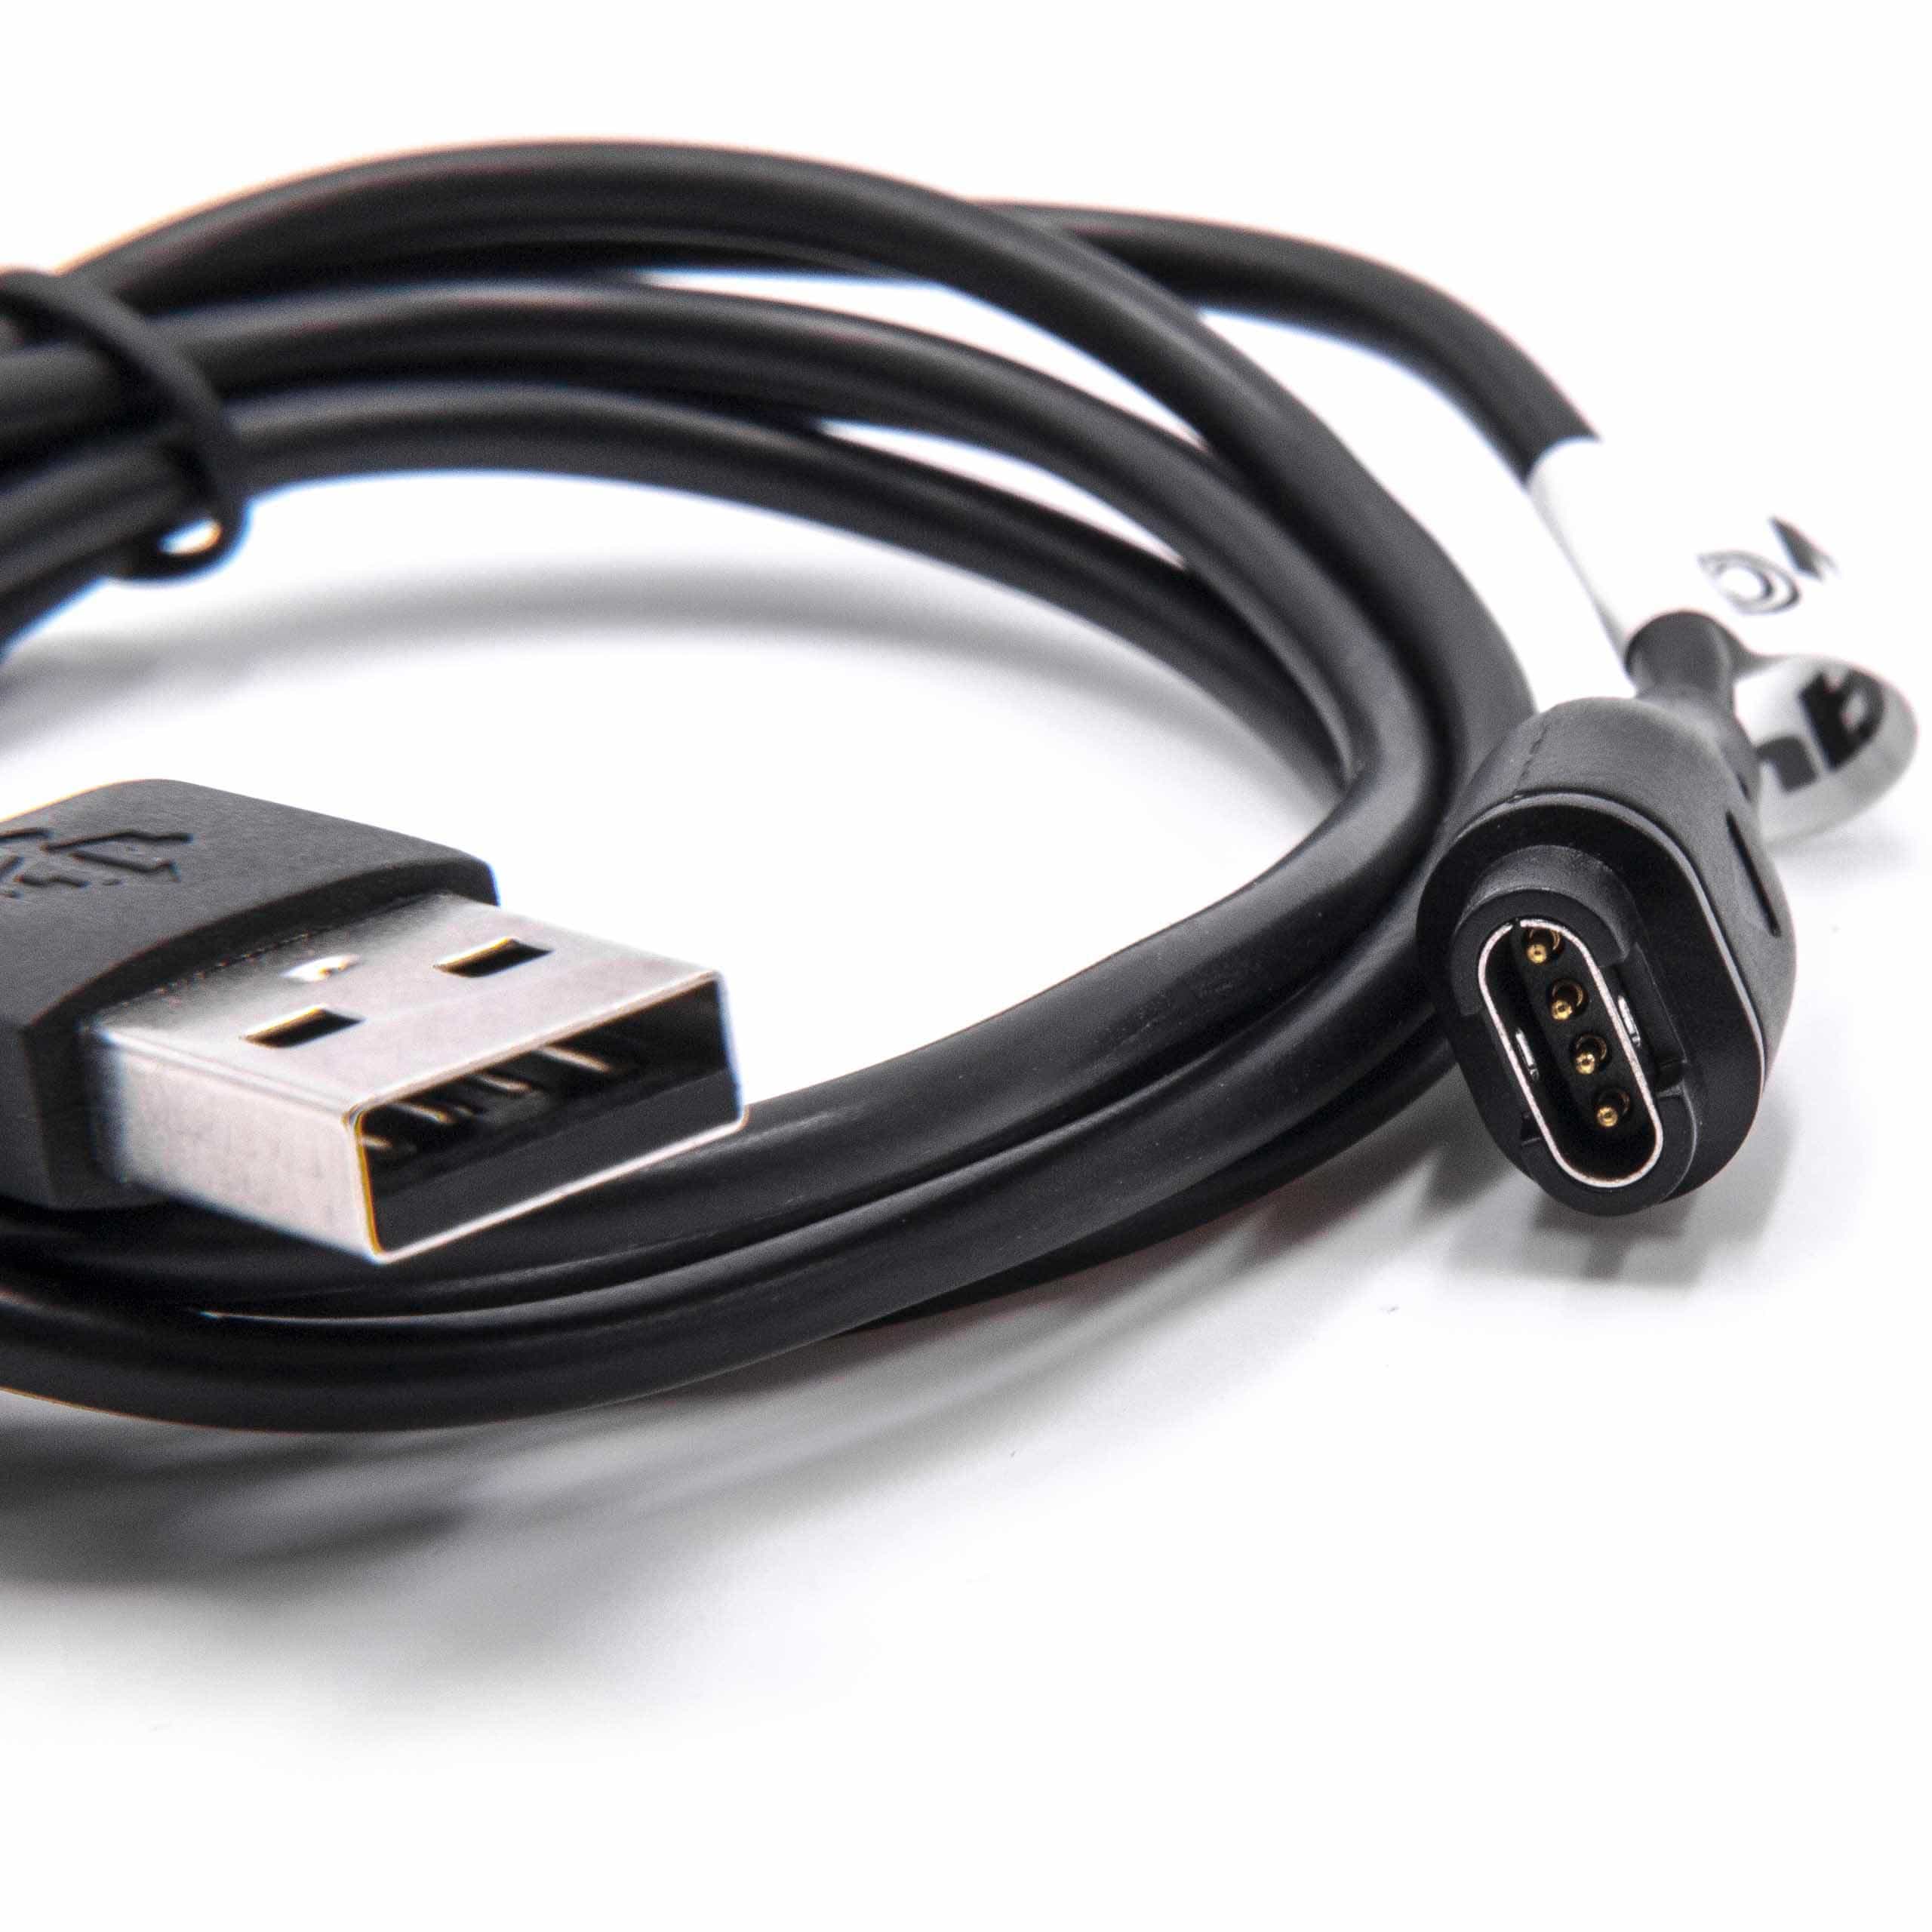 Cable de carga USB para smartwatch Garmin Forerunner - negro 100 cm